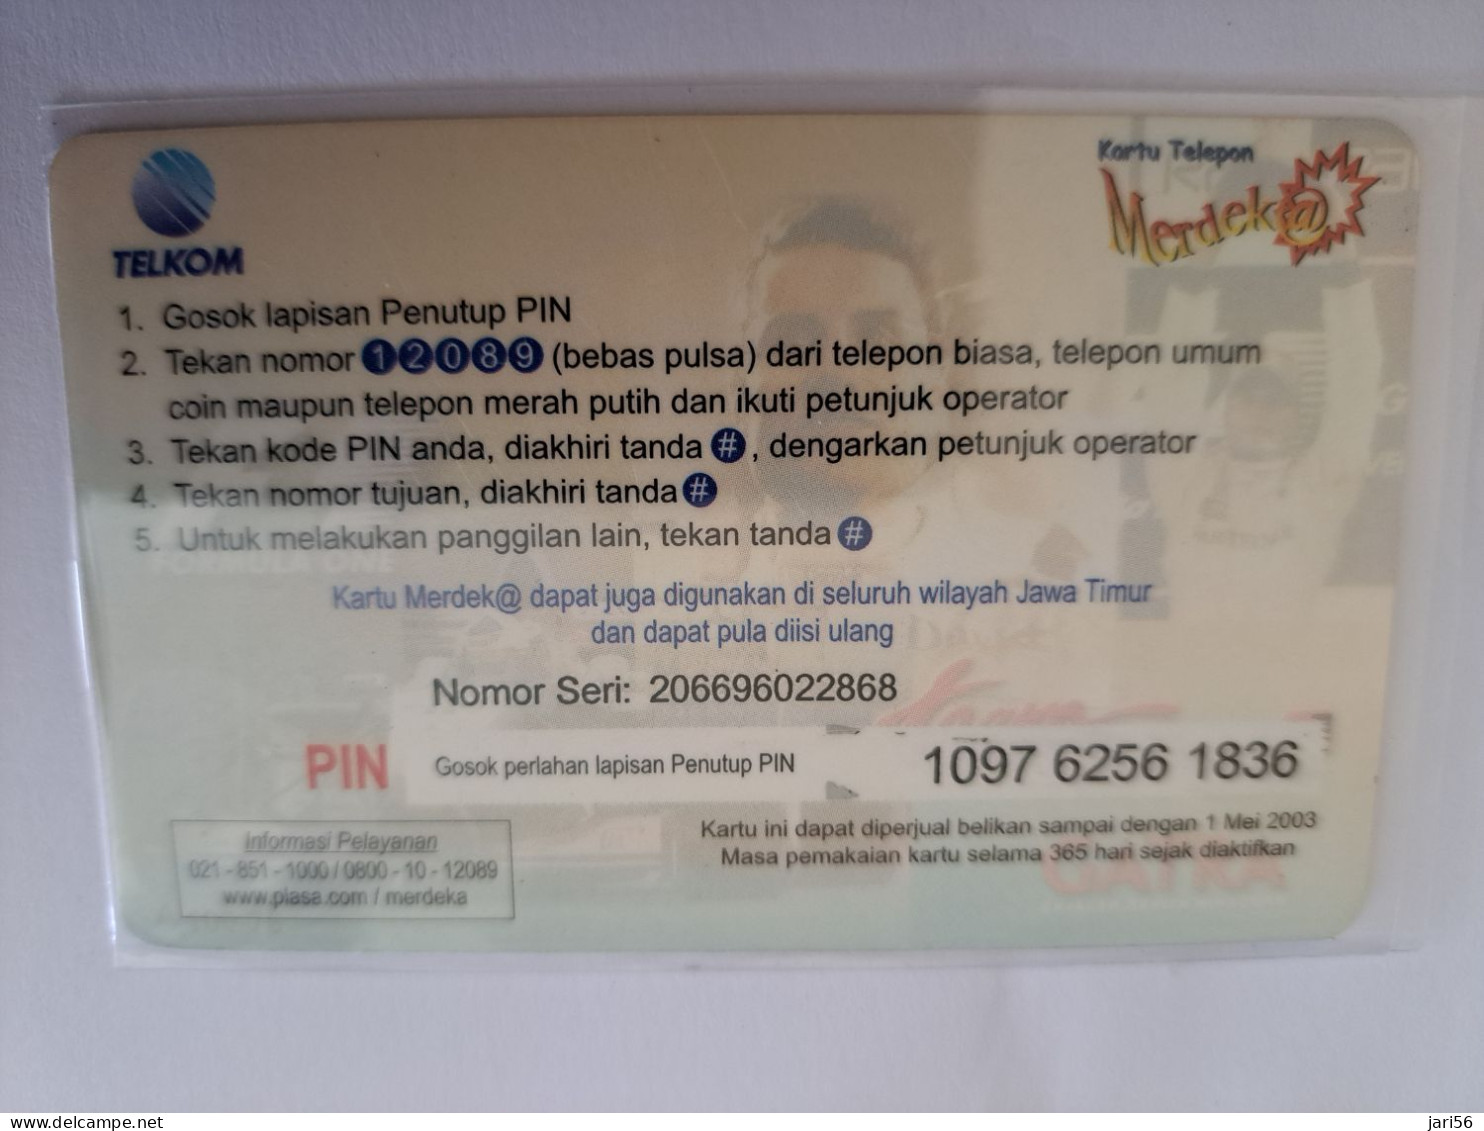 INDONESIA  / IMC LAREN TEAM / AUTO RACING  /   RP 5500    / INDOSAT  / PREPAID/ SEALED     / USED  CARD  **13823 ** - Indonesia